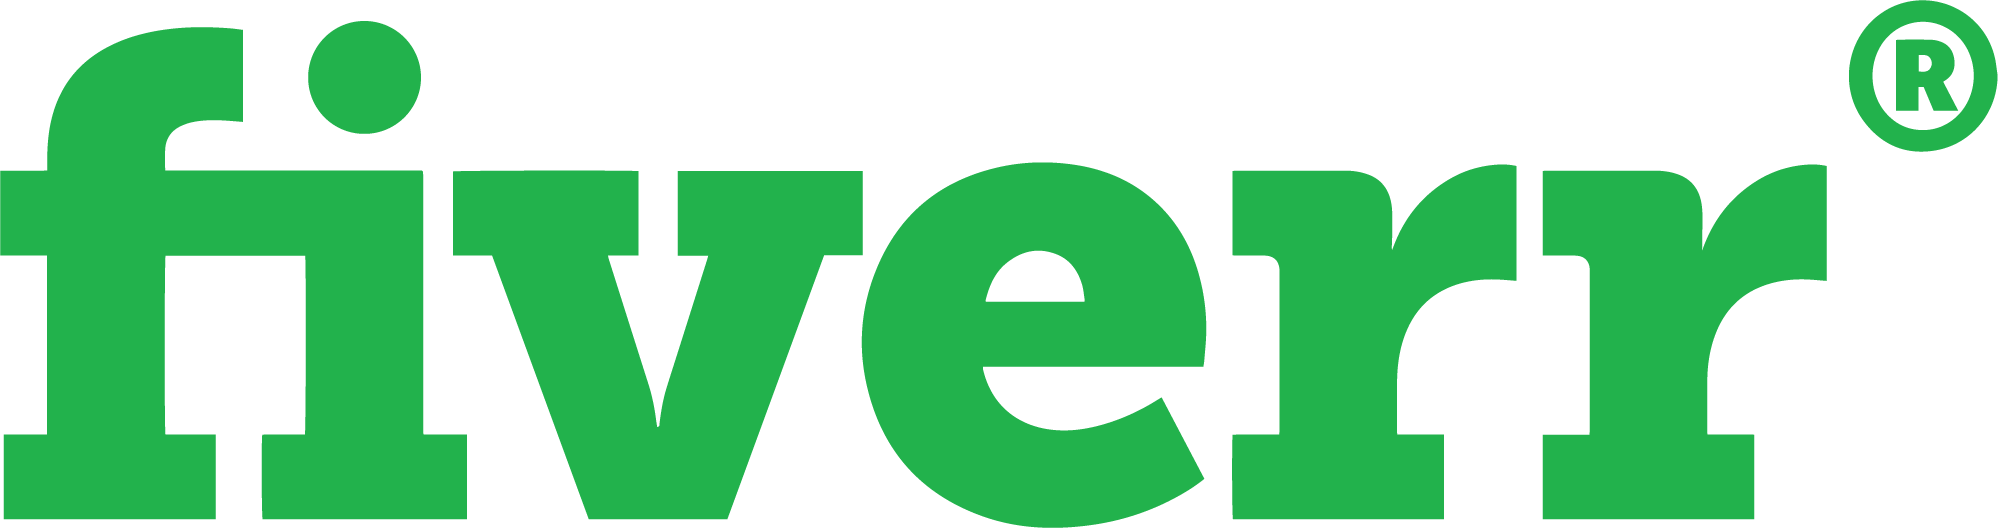 fiverr-old-logo